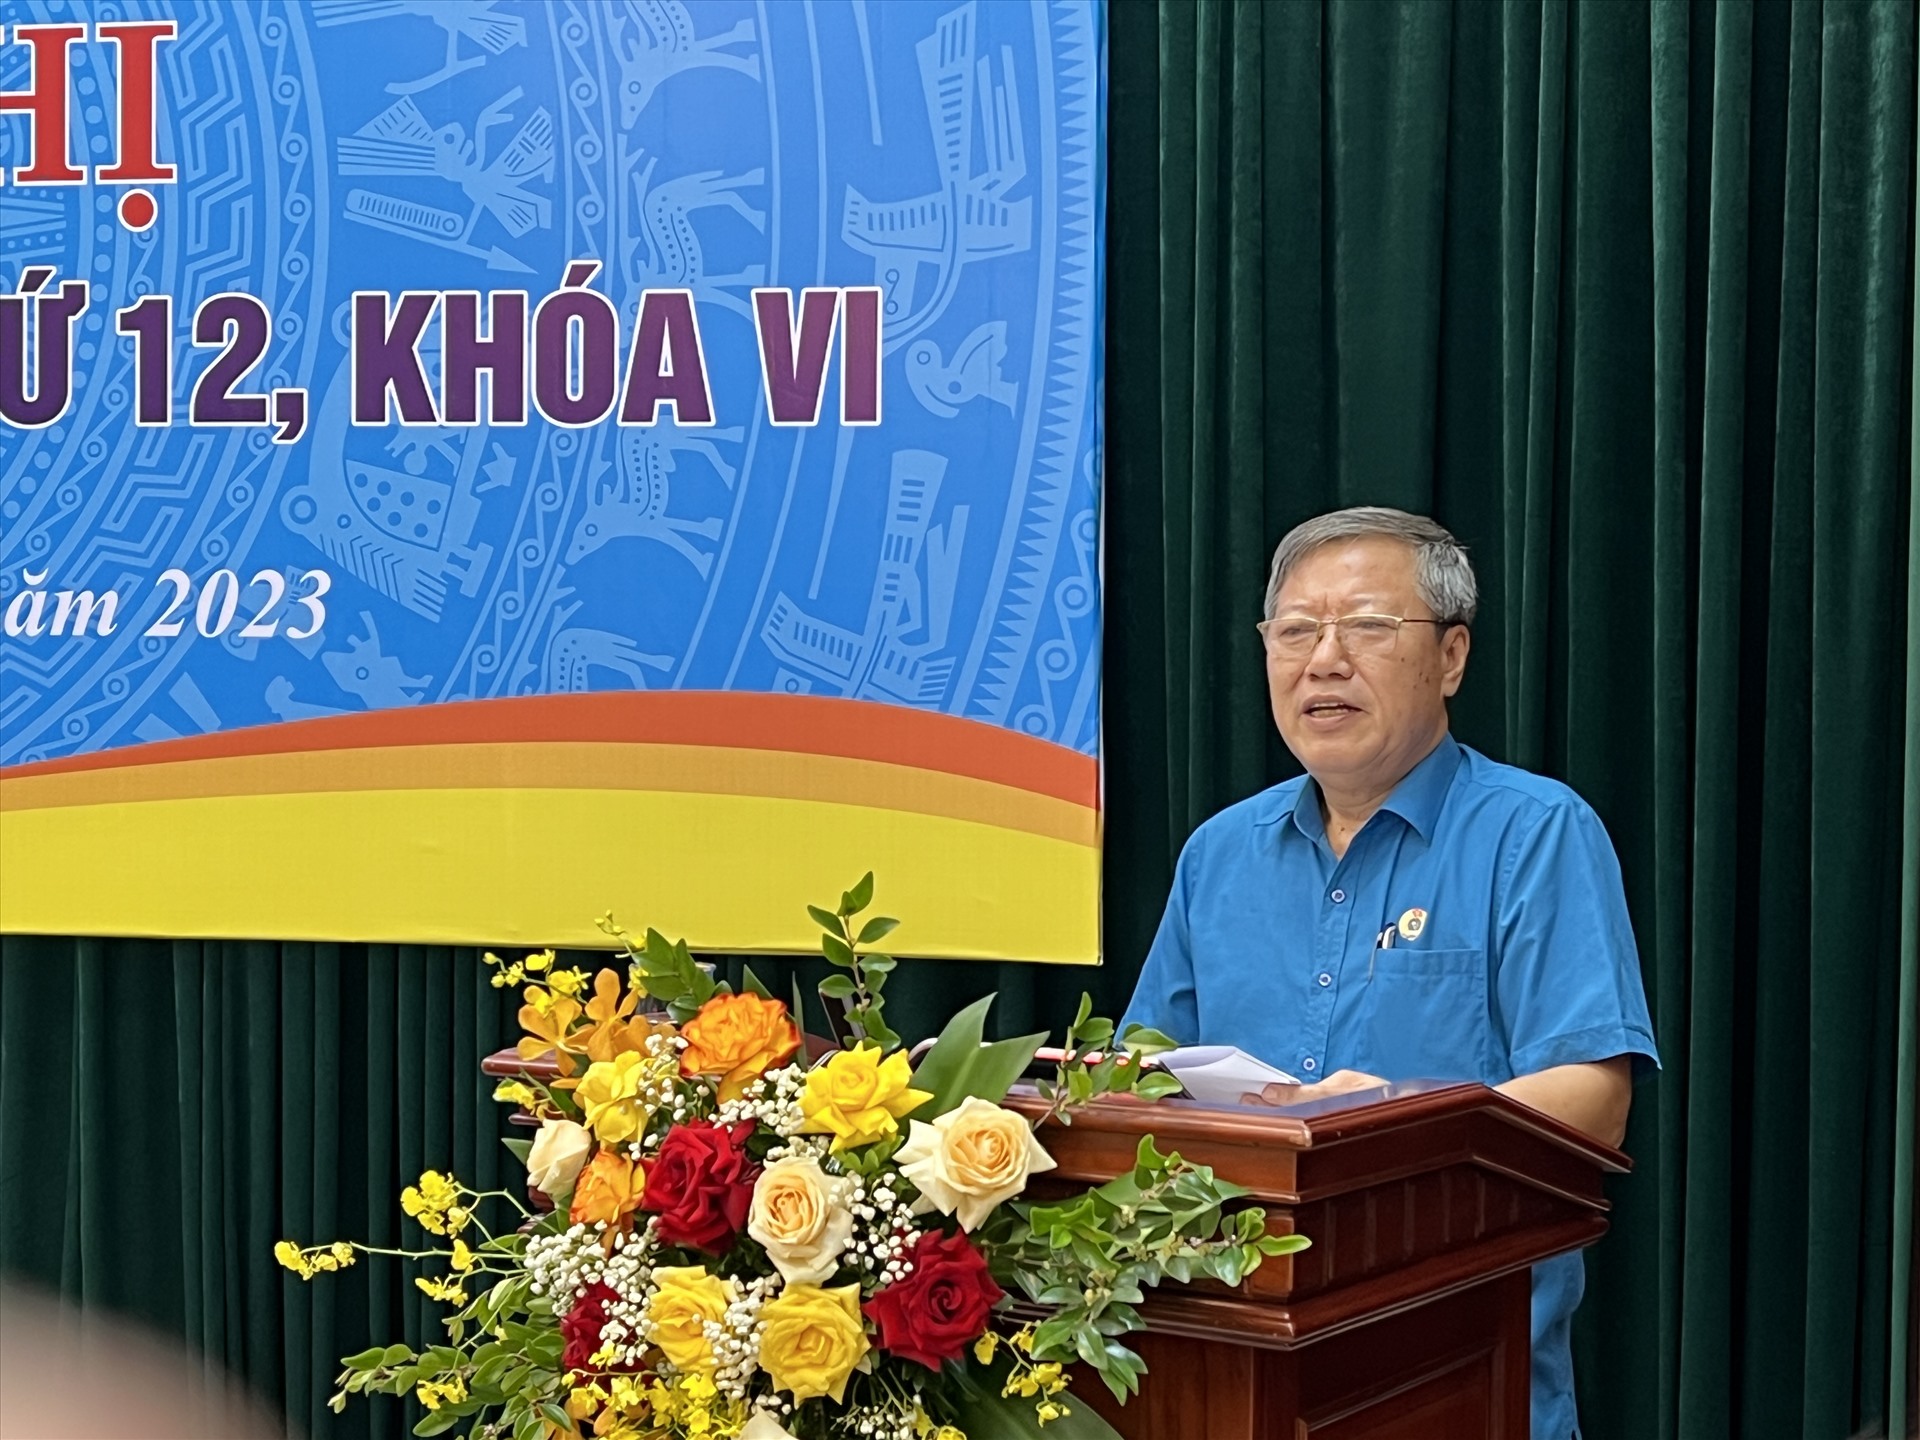 Ông Nguyễn Văn Tân phát biểu tại Hội nghị. Ảnh: Kiều Vũ